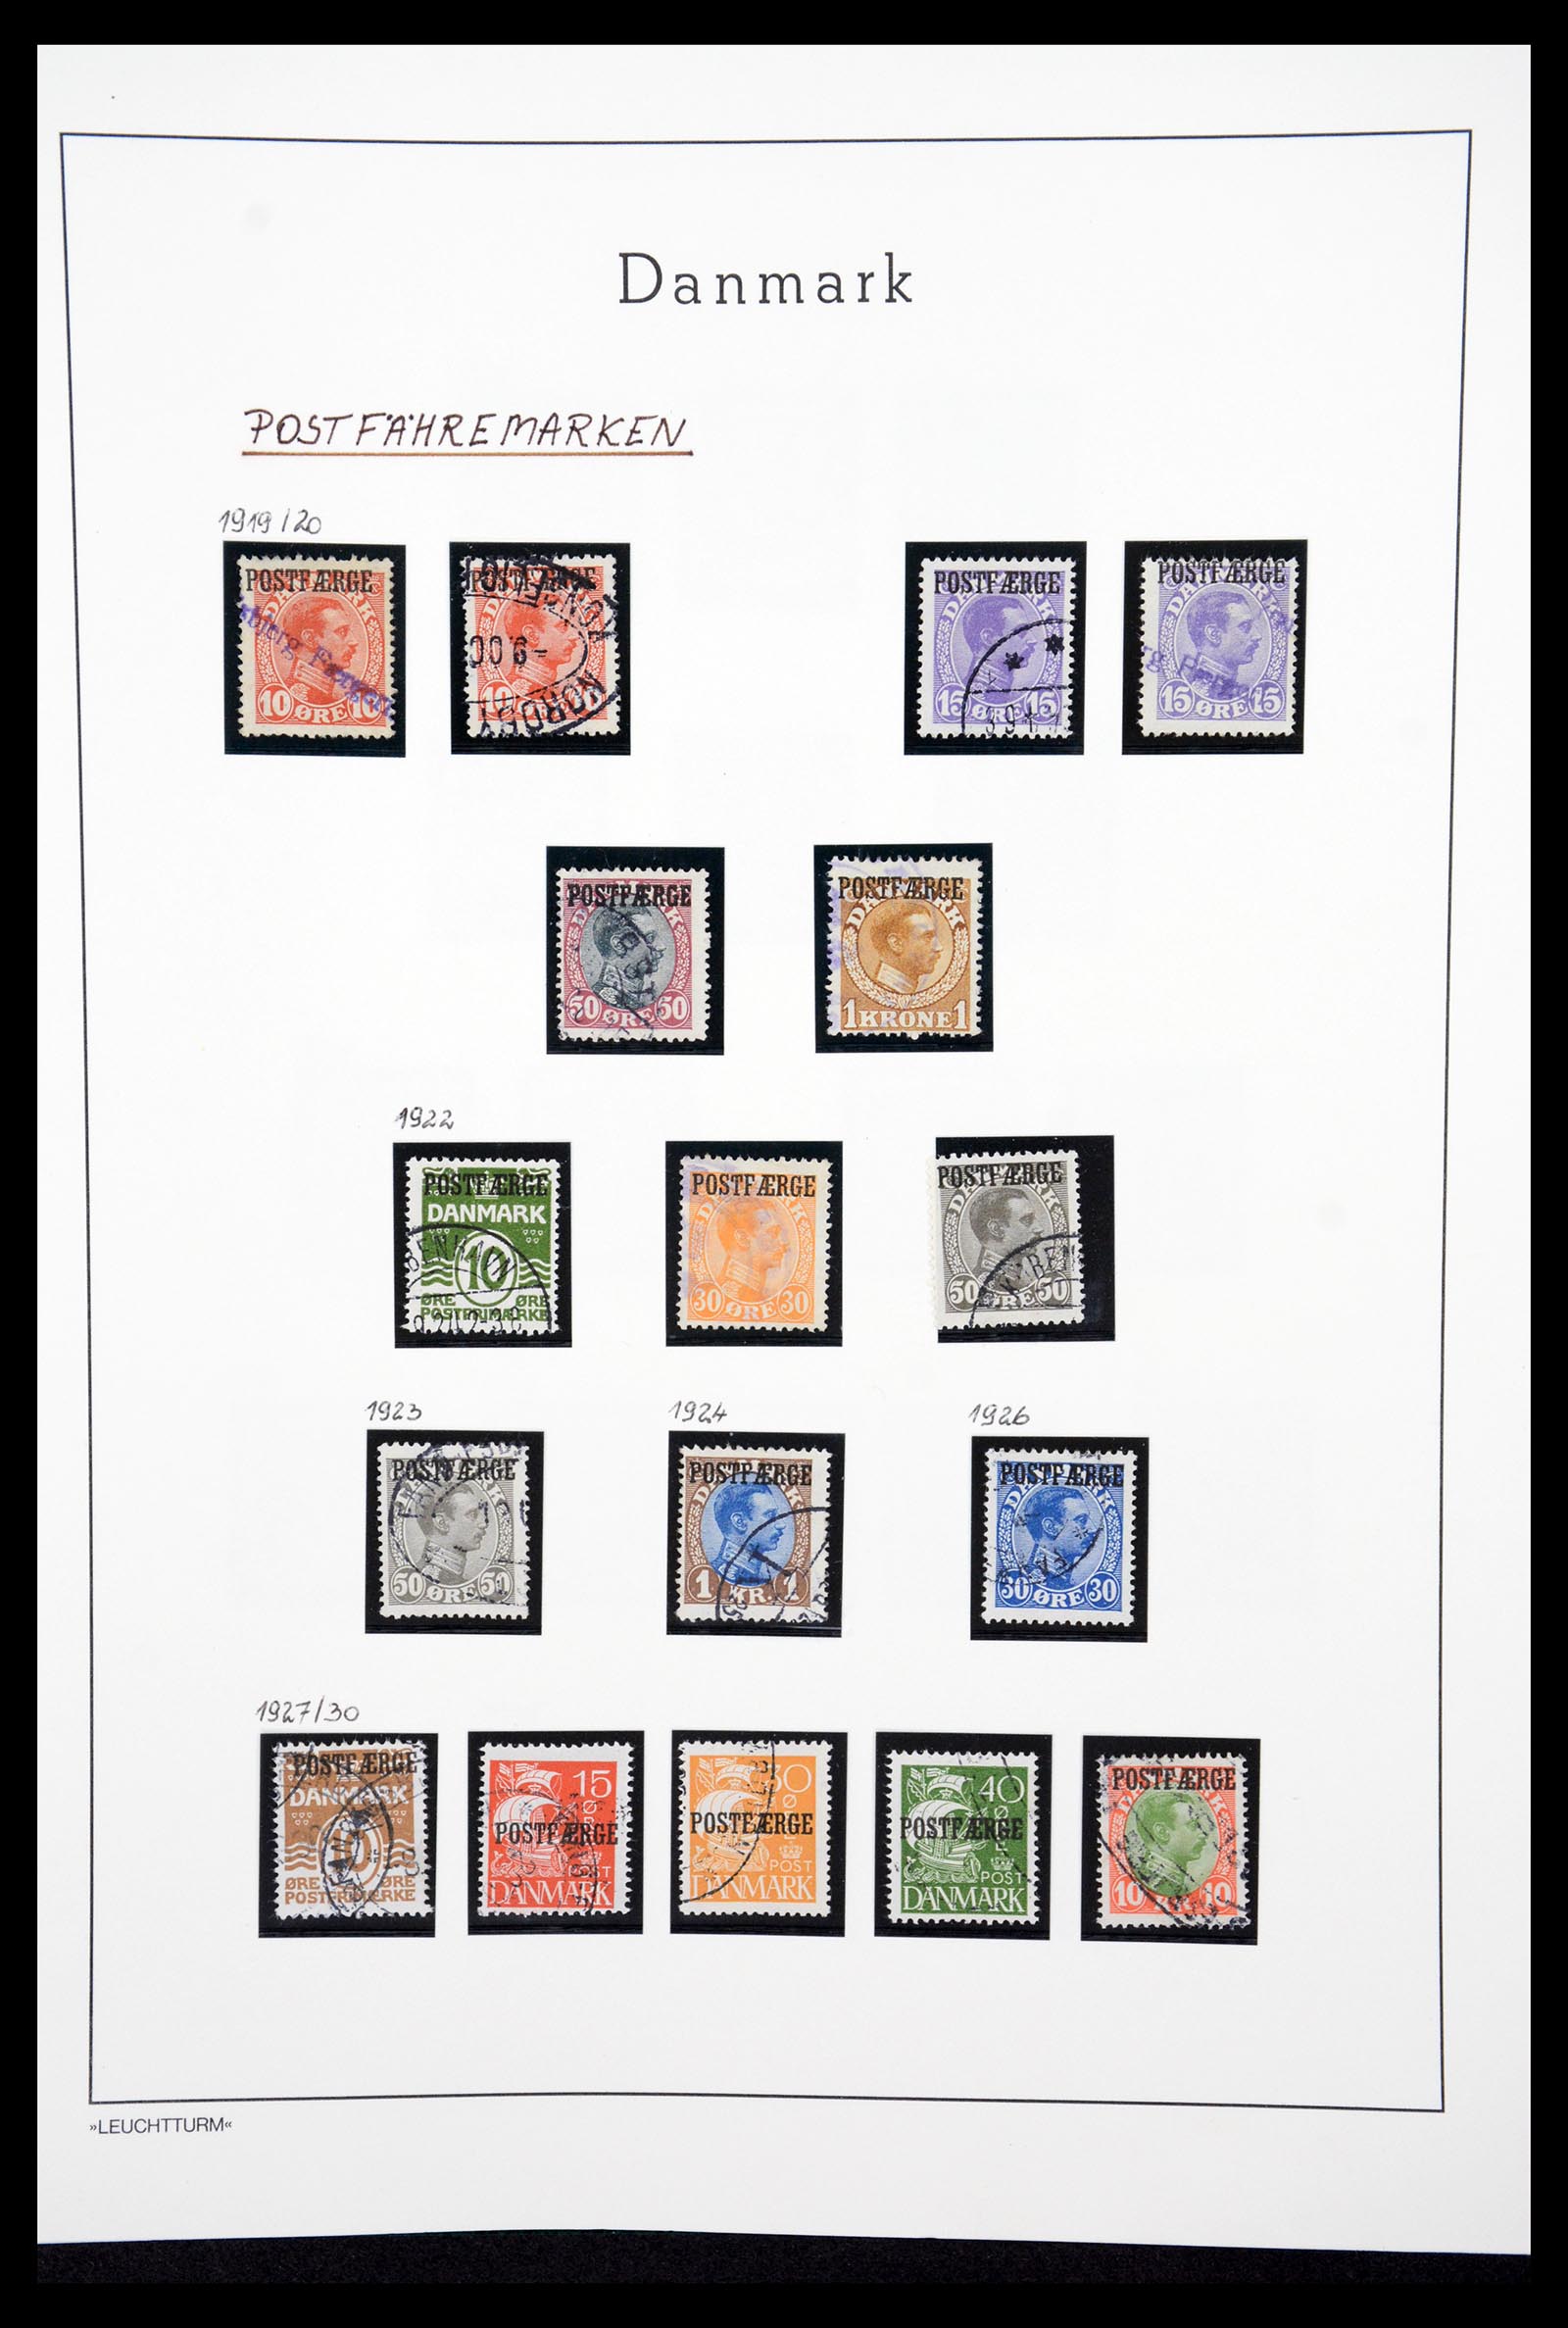 36612 076 - Stamp collection 36612 Denemarken 1851-1990.